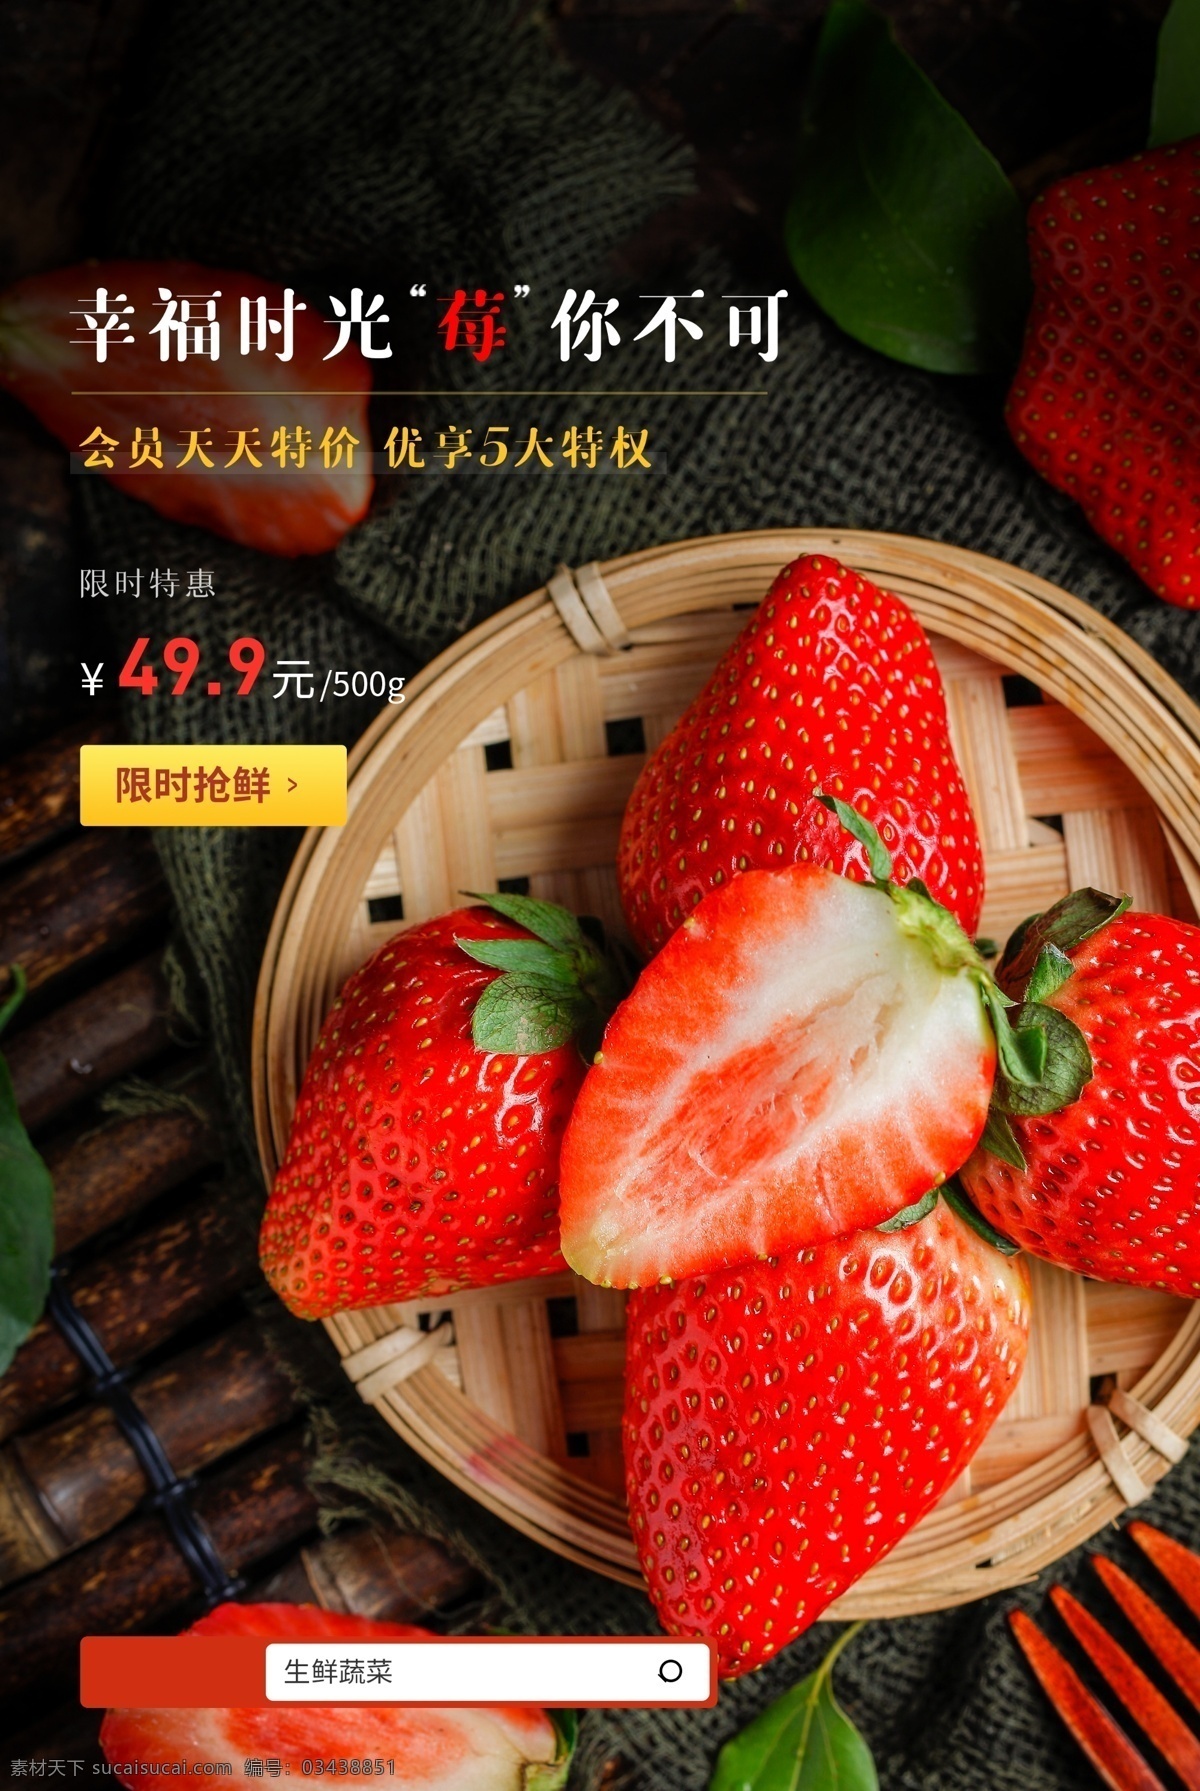 草莓 水果 活动 宣传海报 宣传 海报 餐饮美食 类